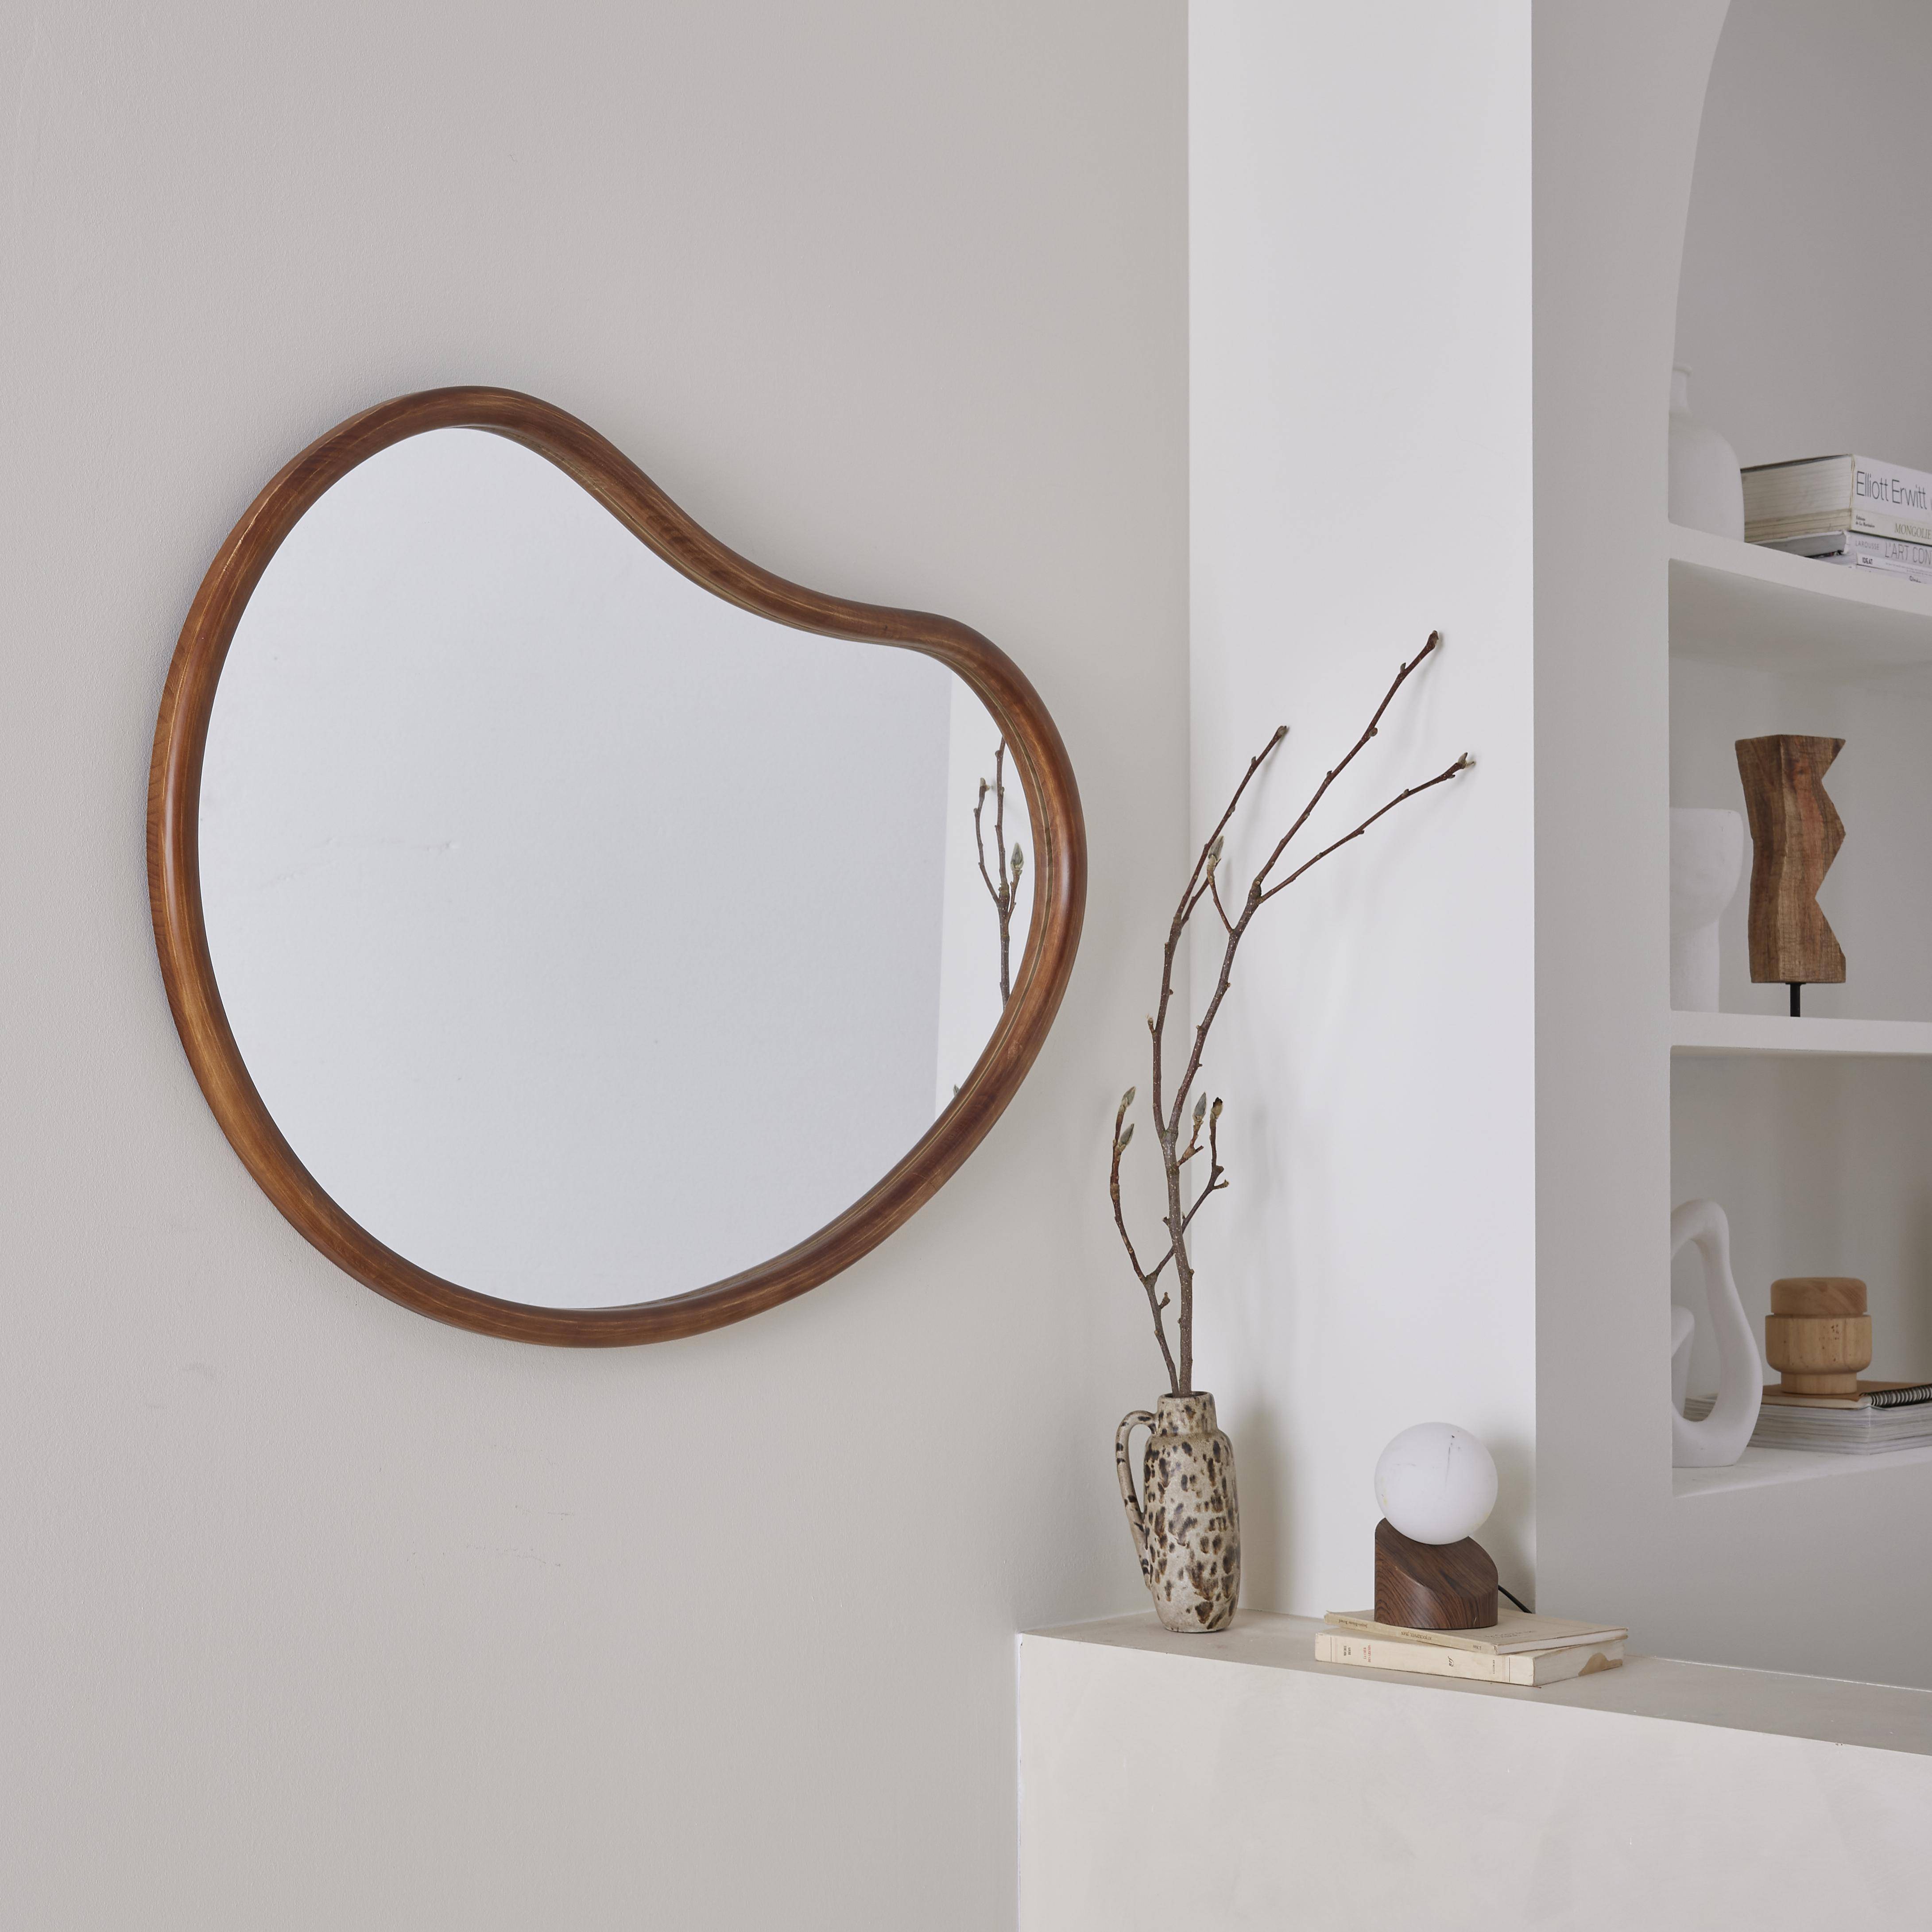 Miroir organique en bois de sapin 95cm épaisseur 3cm coloris noyer idéal entrée, chambre ou salle de bain,sweeek,Photo2